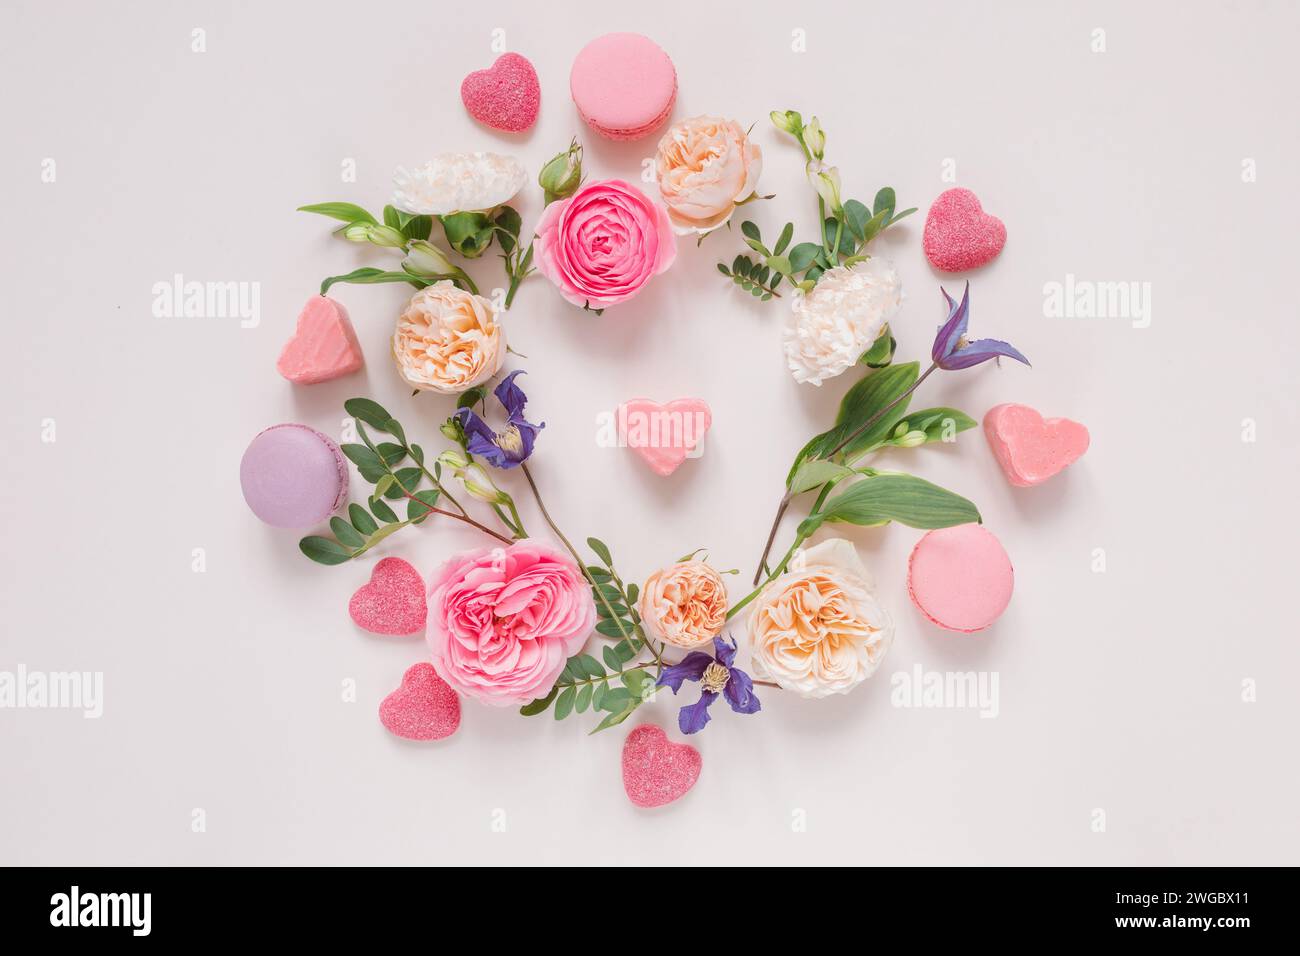 Vue aérienne d'un arrangement floral de roses, chrysanthèmes, fleurs d'alstroemeria et feuillage autour de bonbons en forme de coeur sur un fond rose Banque D'Images